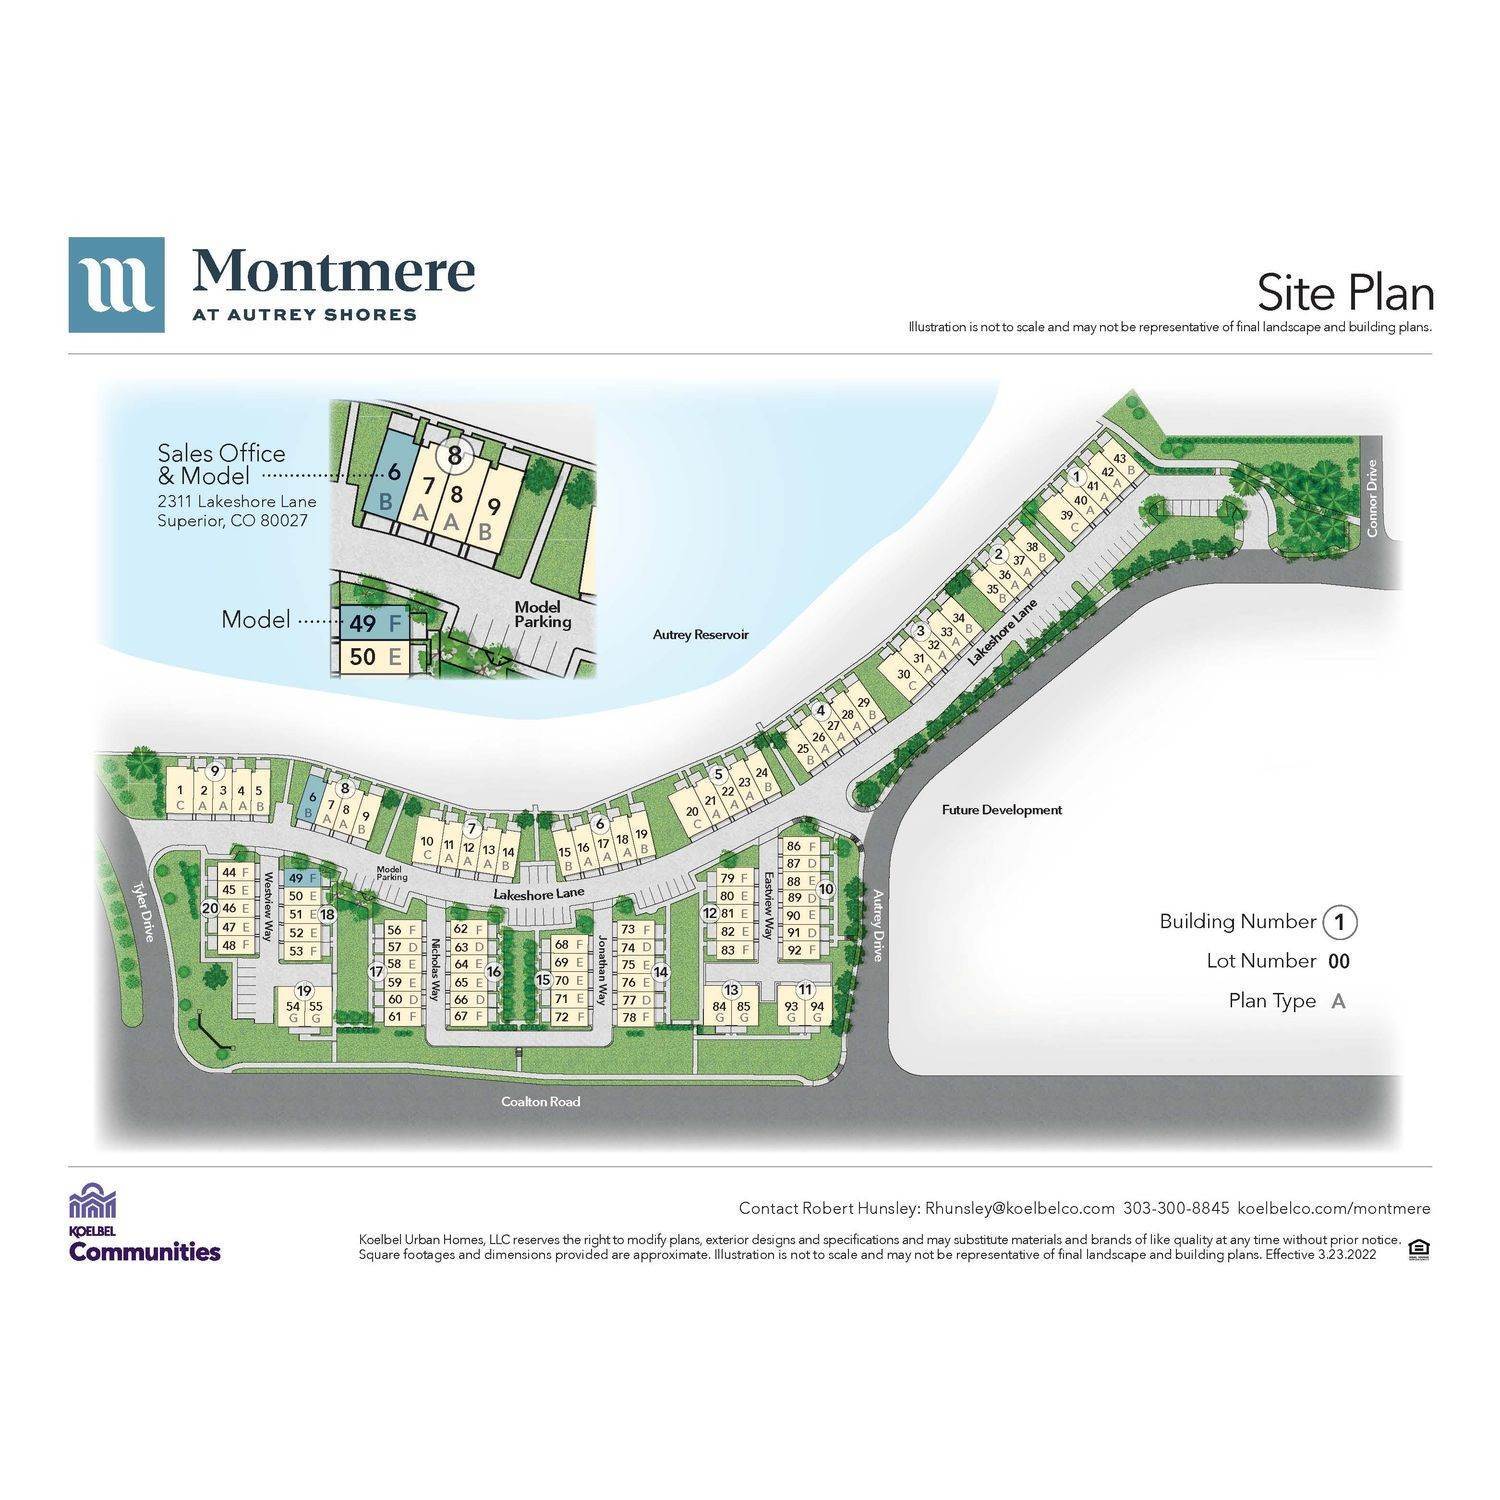 Montmere at Autrey Shores建於 2311 Lakeshore Lane, Superior, CO 80027